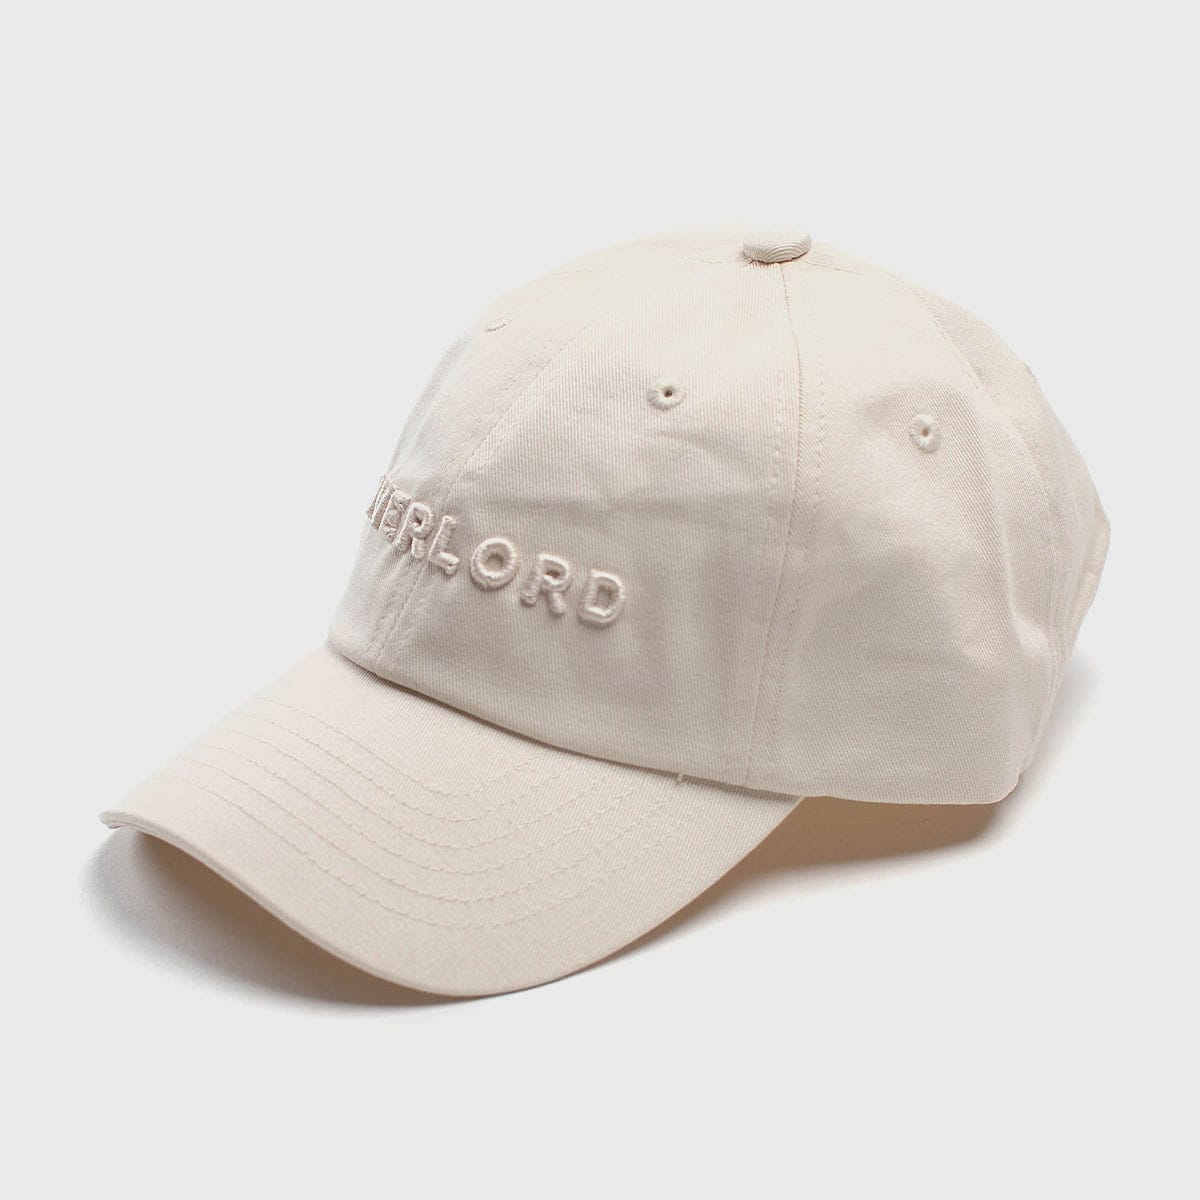 CREW LOW CAP WHITE 老帽